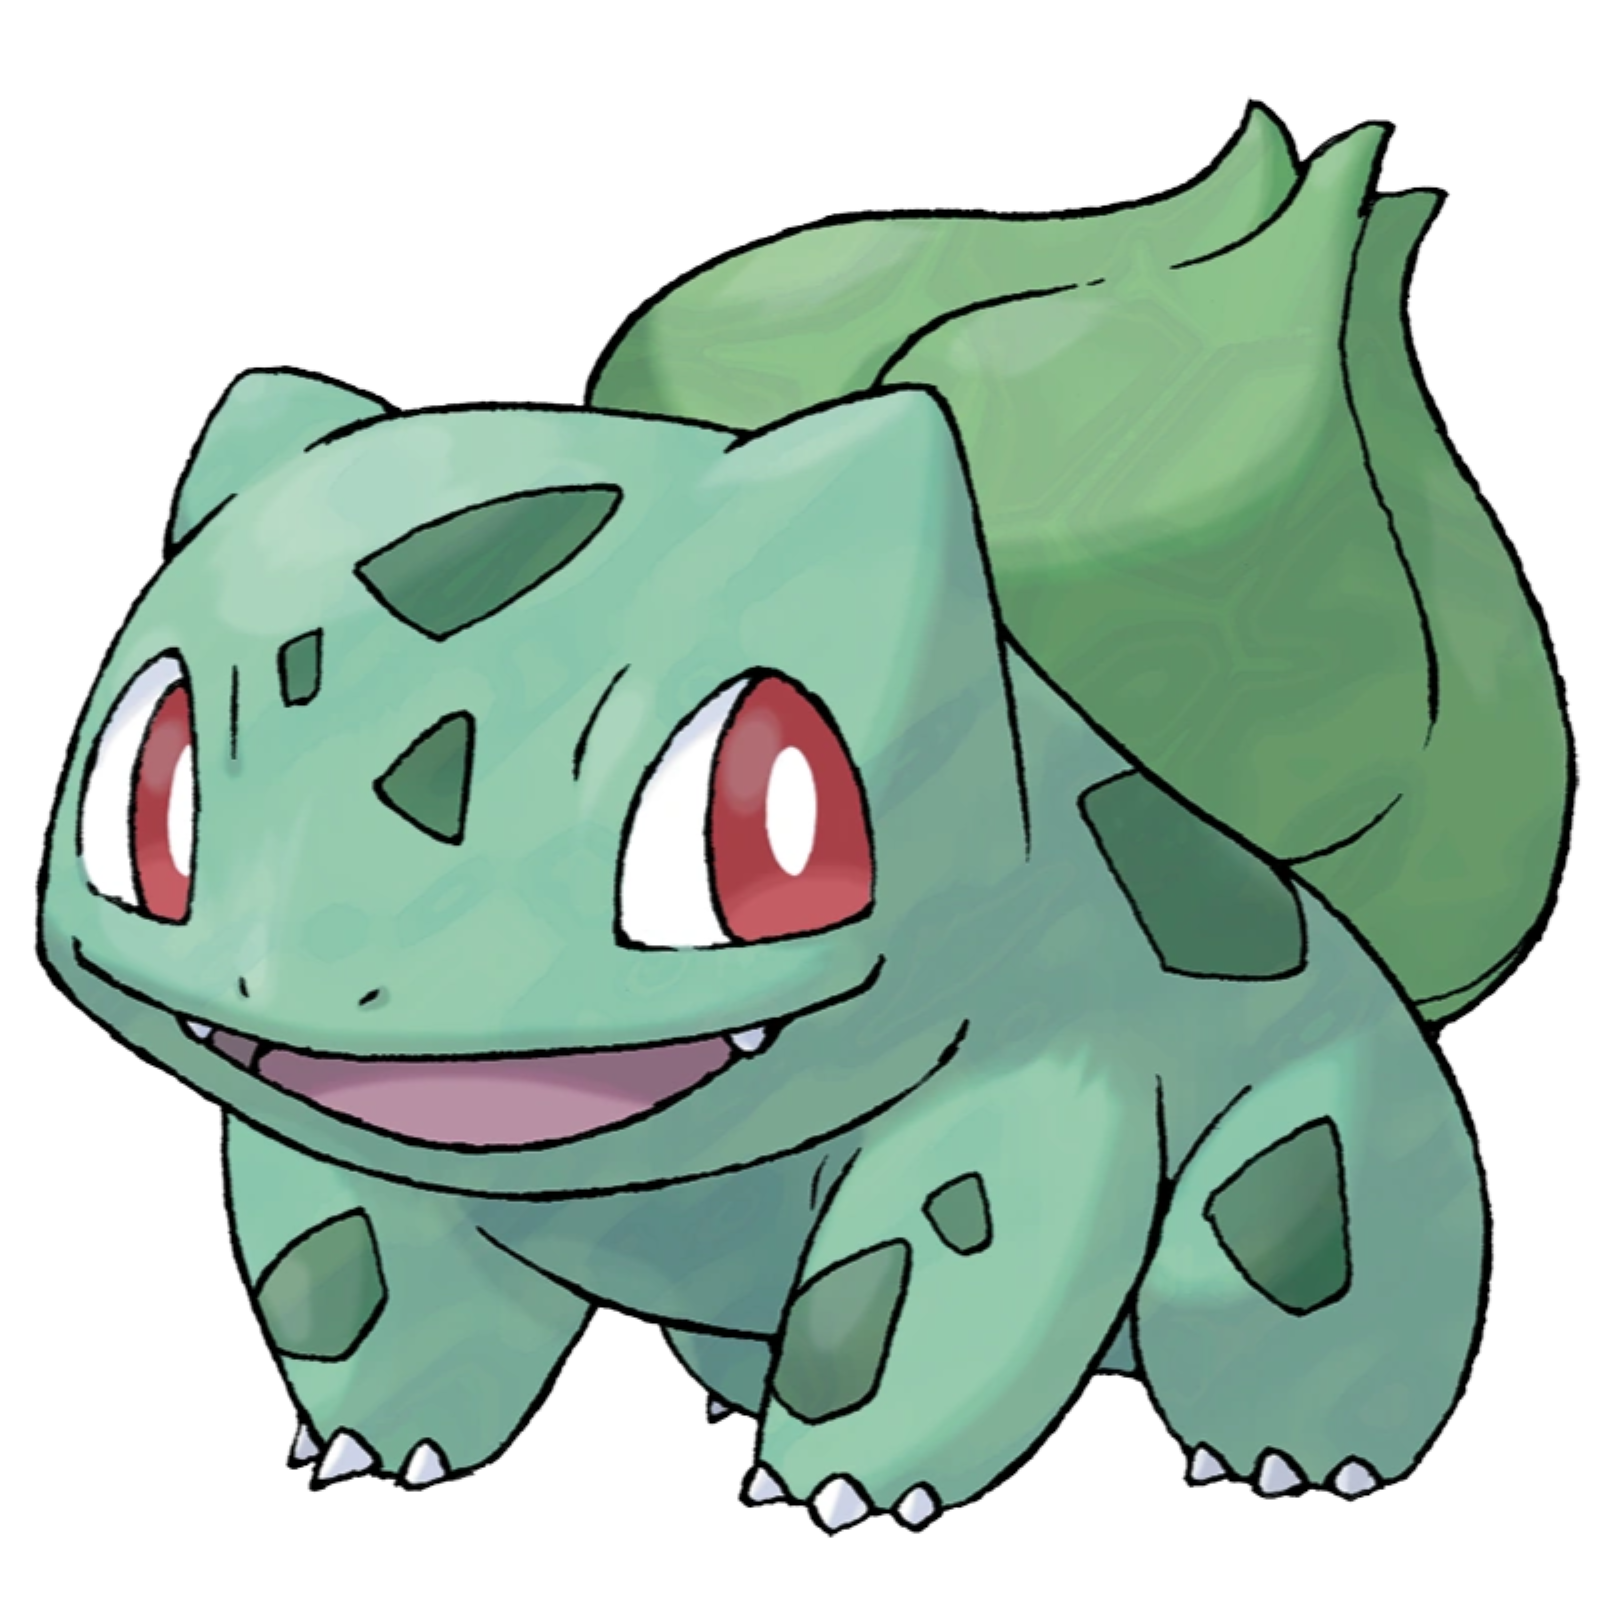 Bulbasaur | Pokémon Wiki | Fandom powered by Wikia